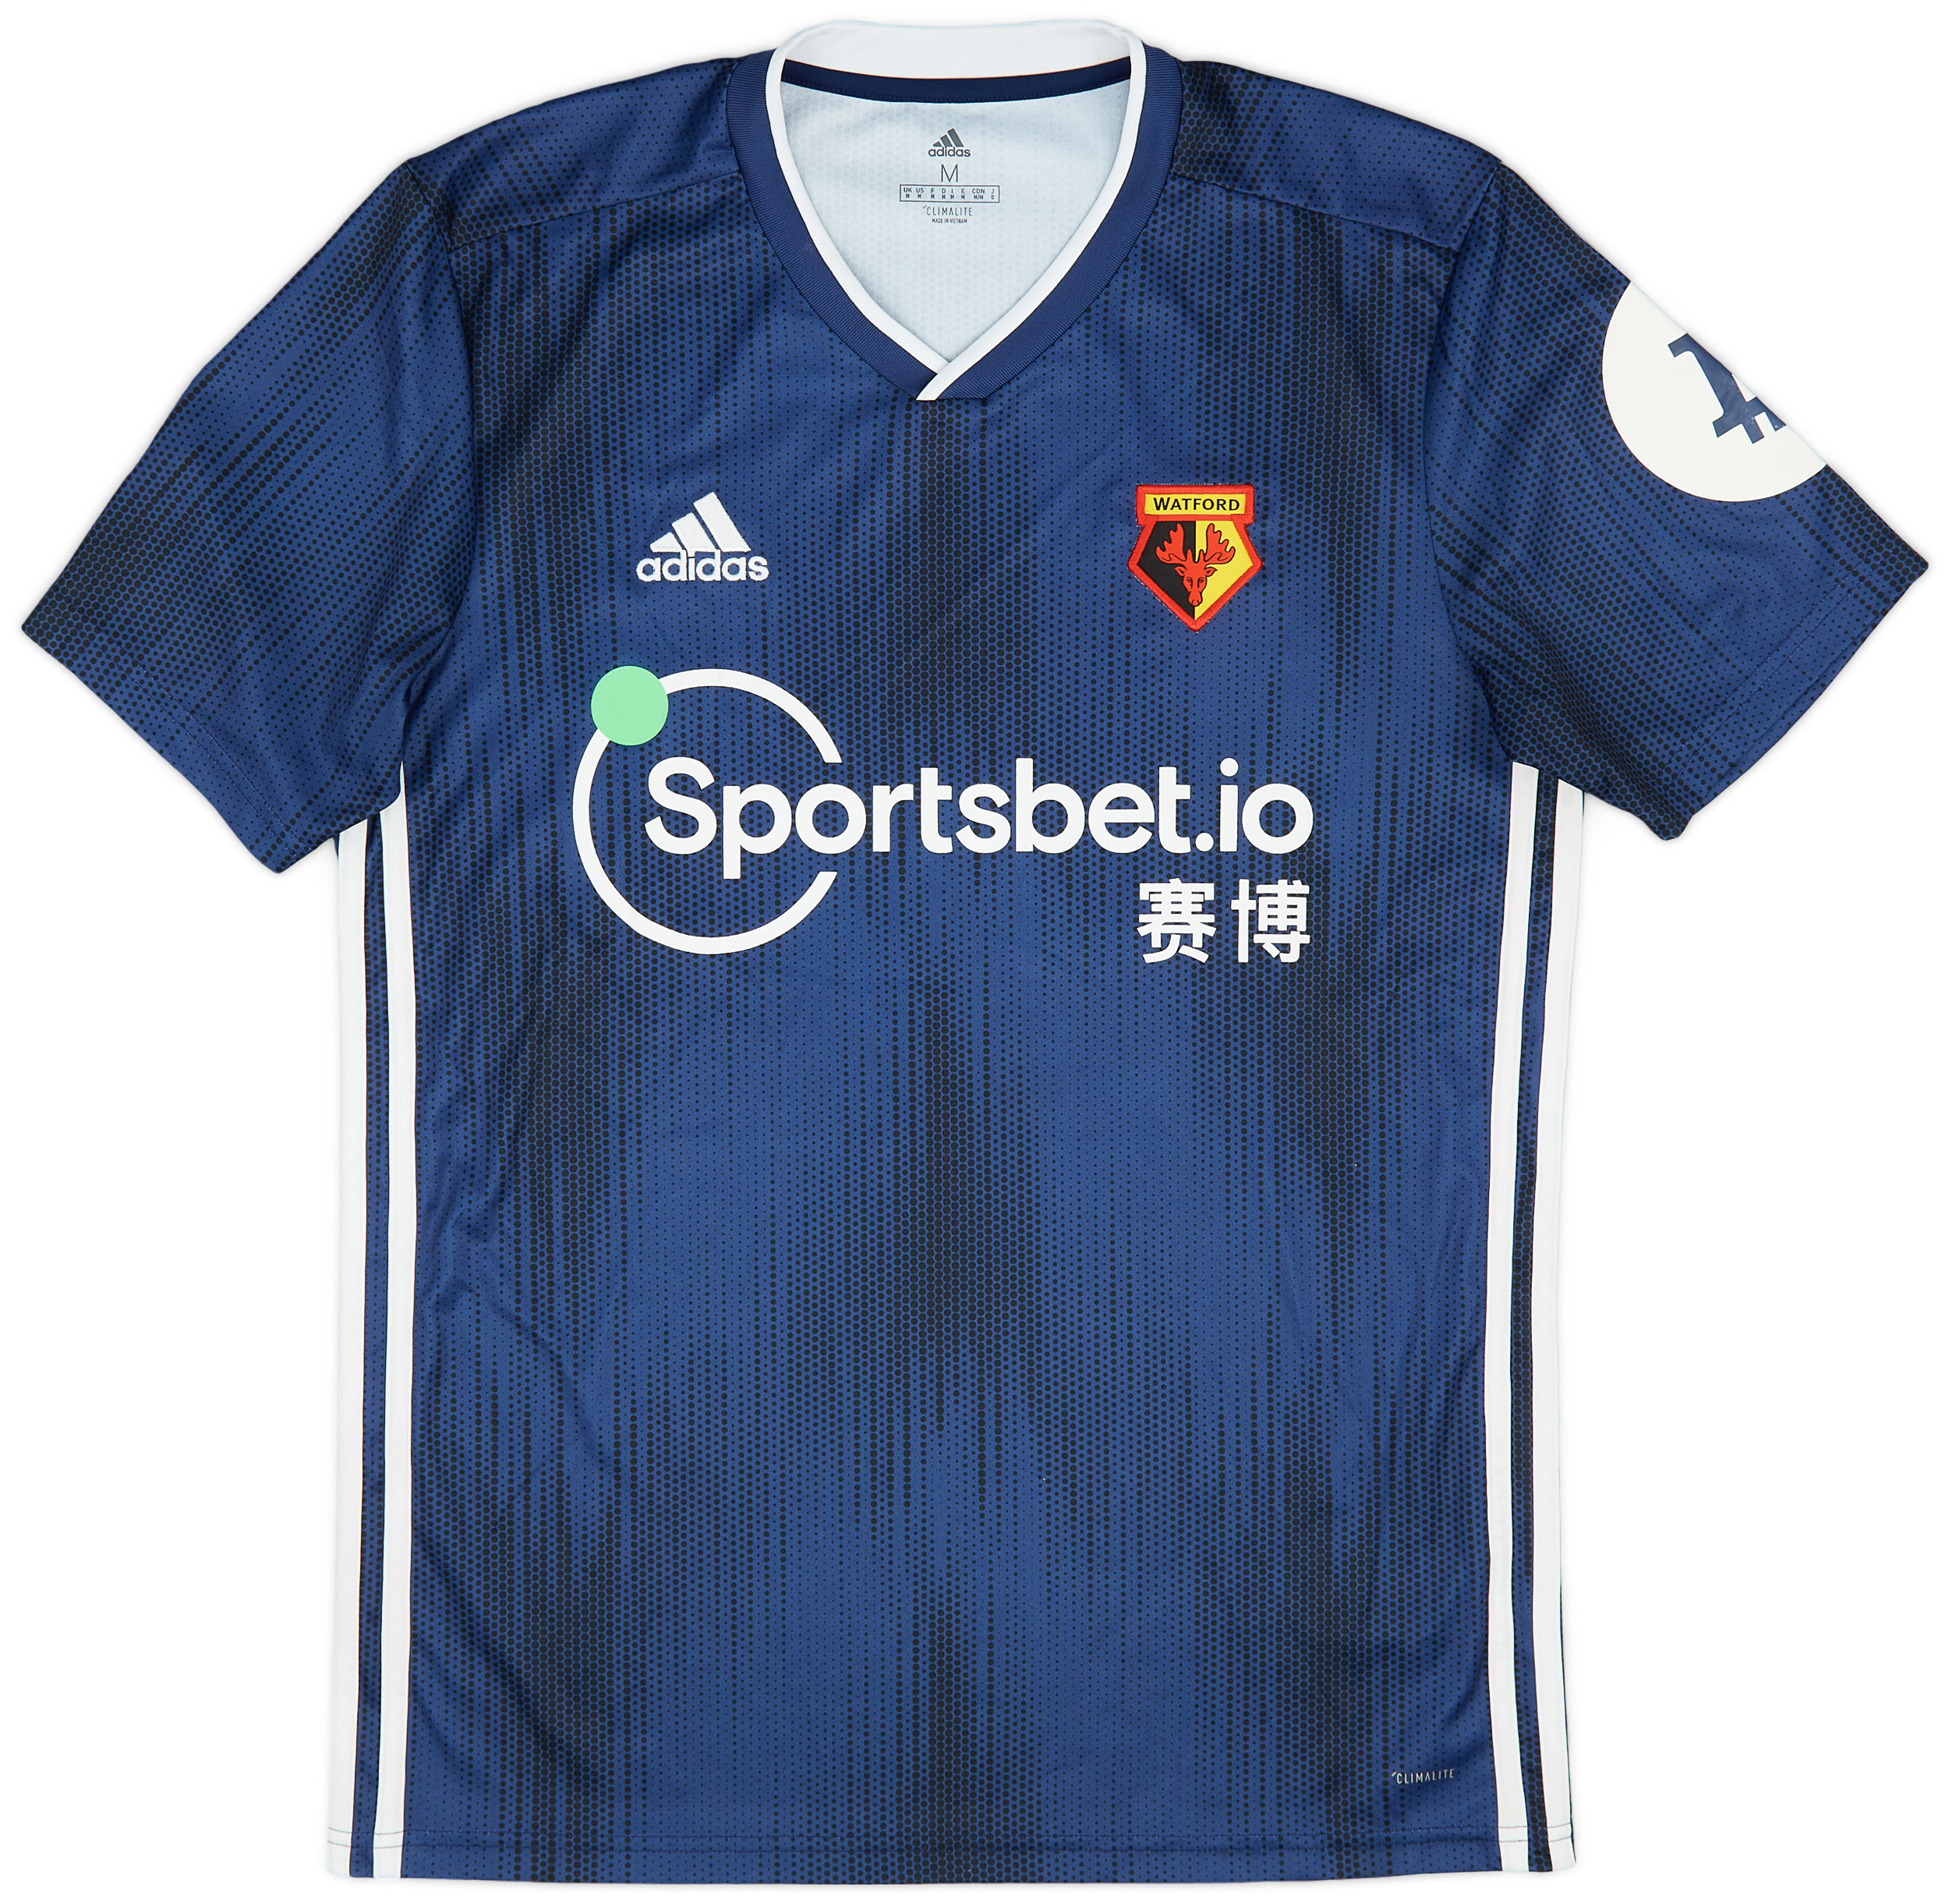 2019-20 Watford Away Shirt - 8/10 - ()